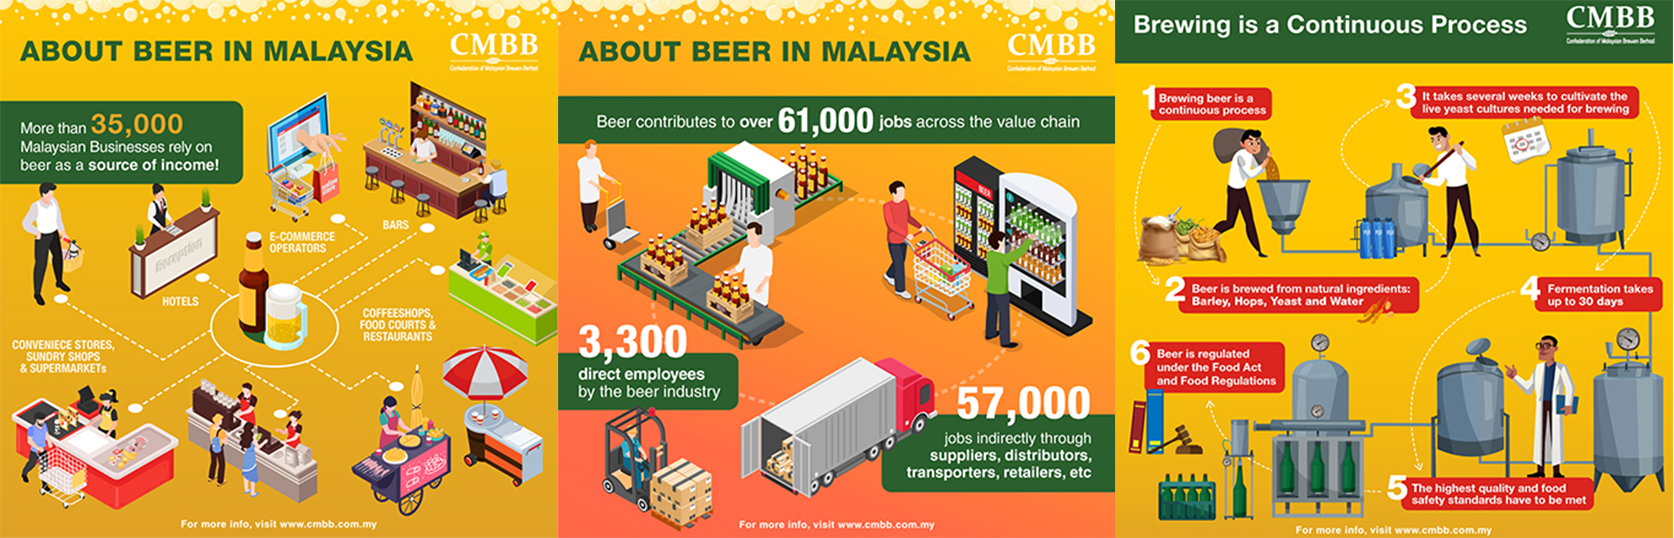 Fun Facts About Beer in Malaysia - Heineken Malaysia Berhad